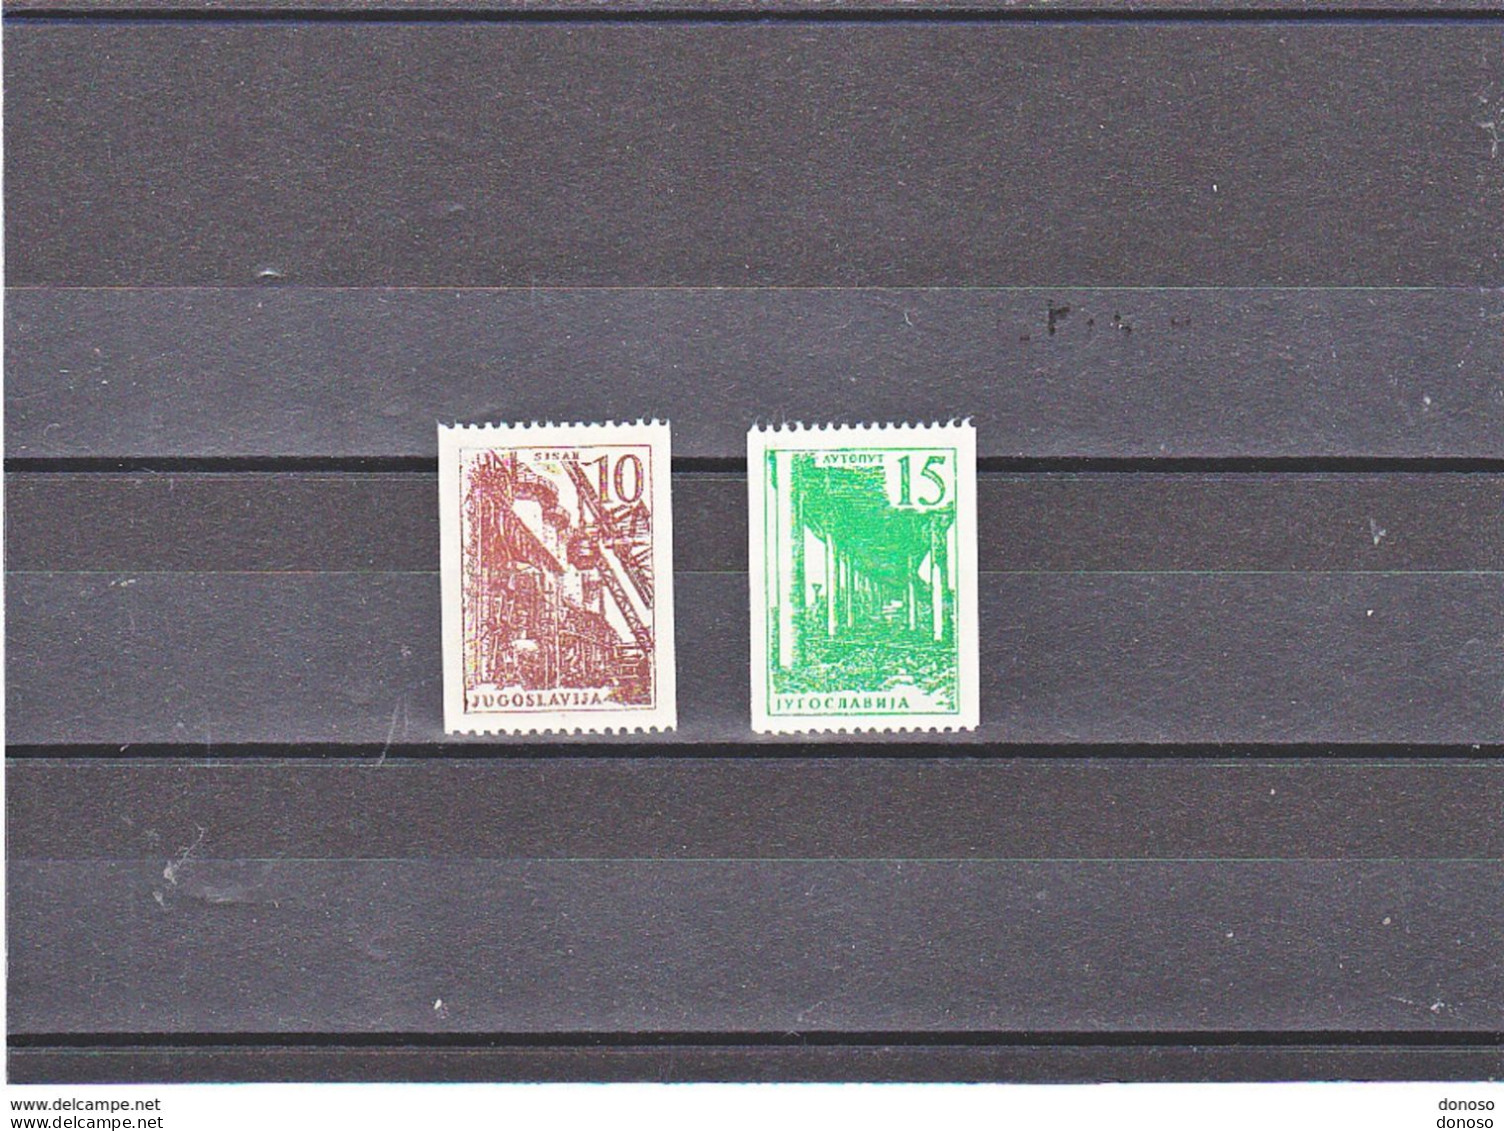 YOUGOSLAVIE 1961 Série Courante Yvert  869-870 NEUF** MNH Cote : 28,50 Euros - Neufs